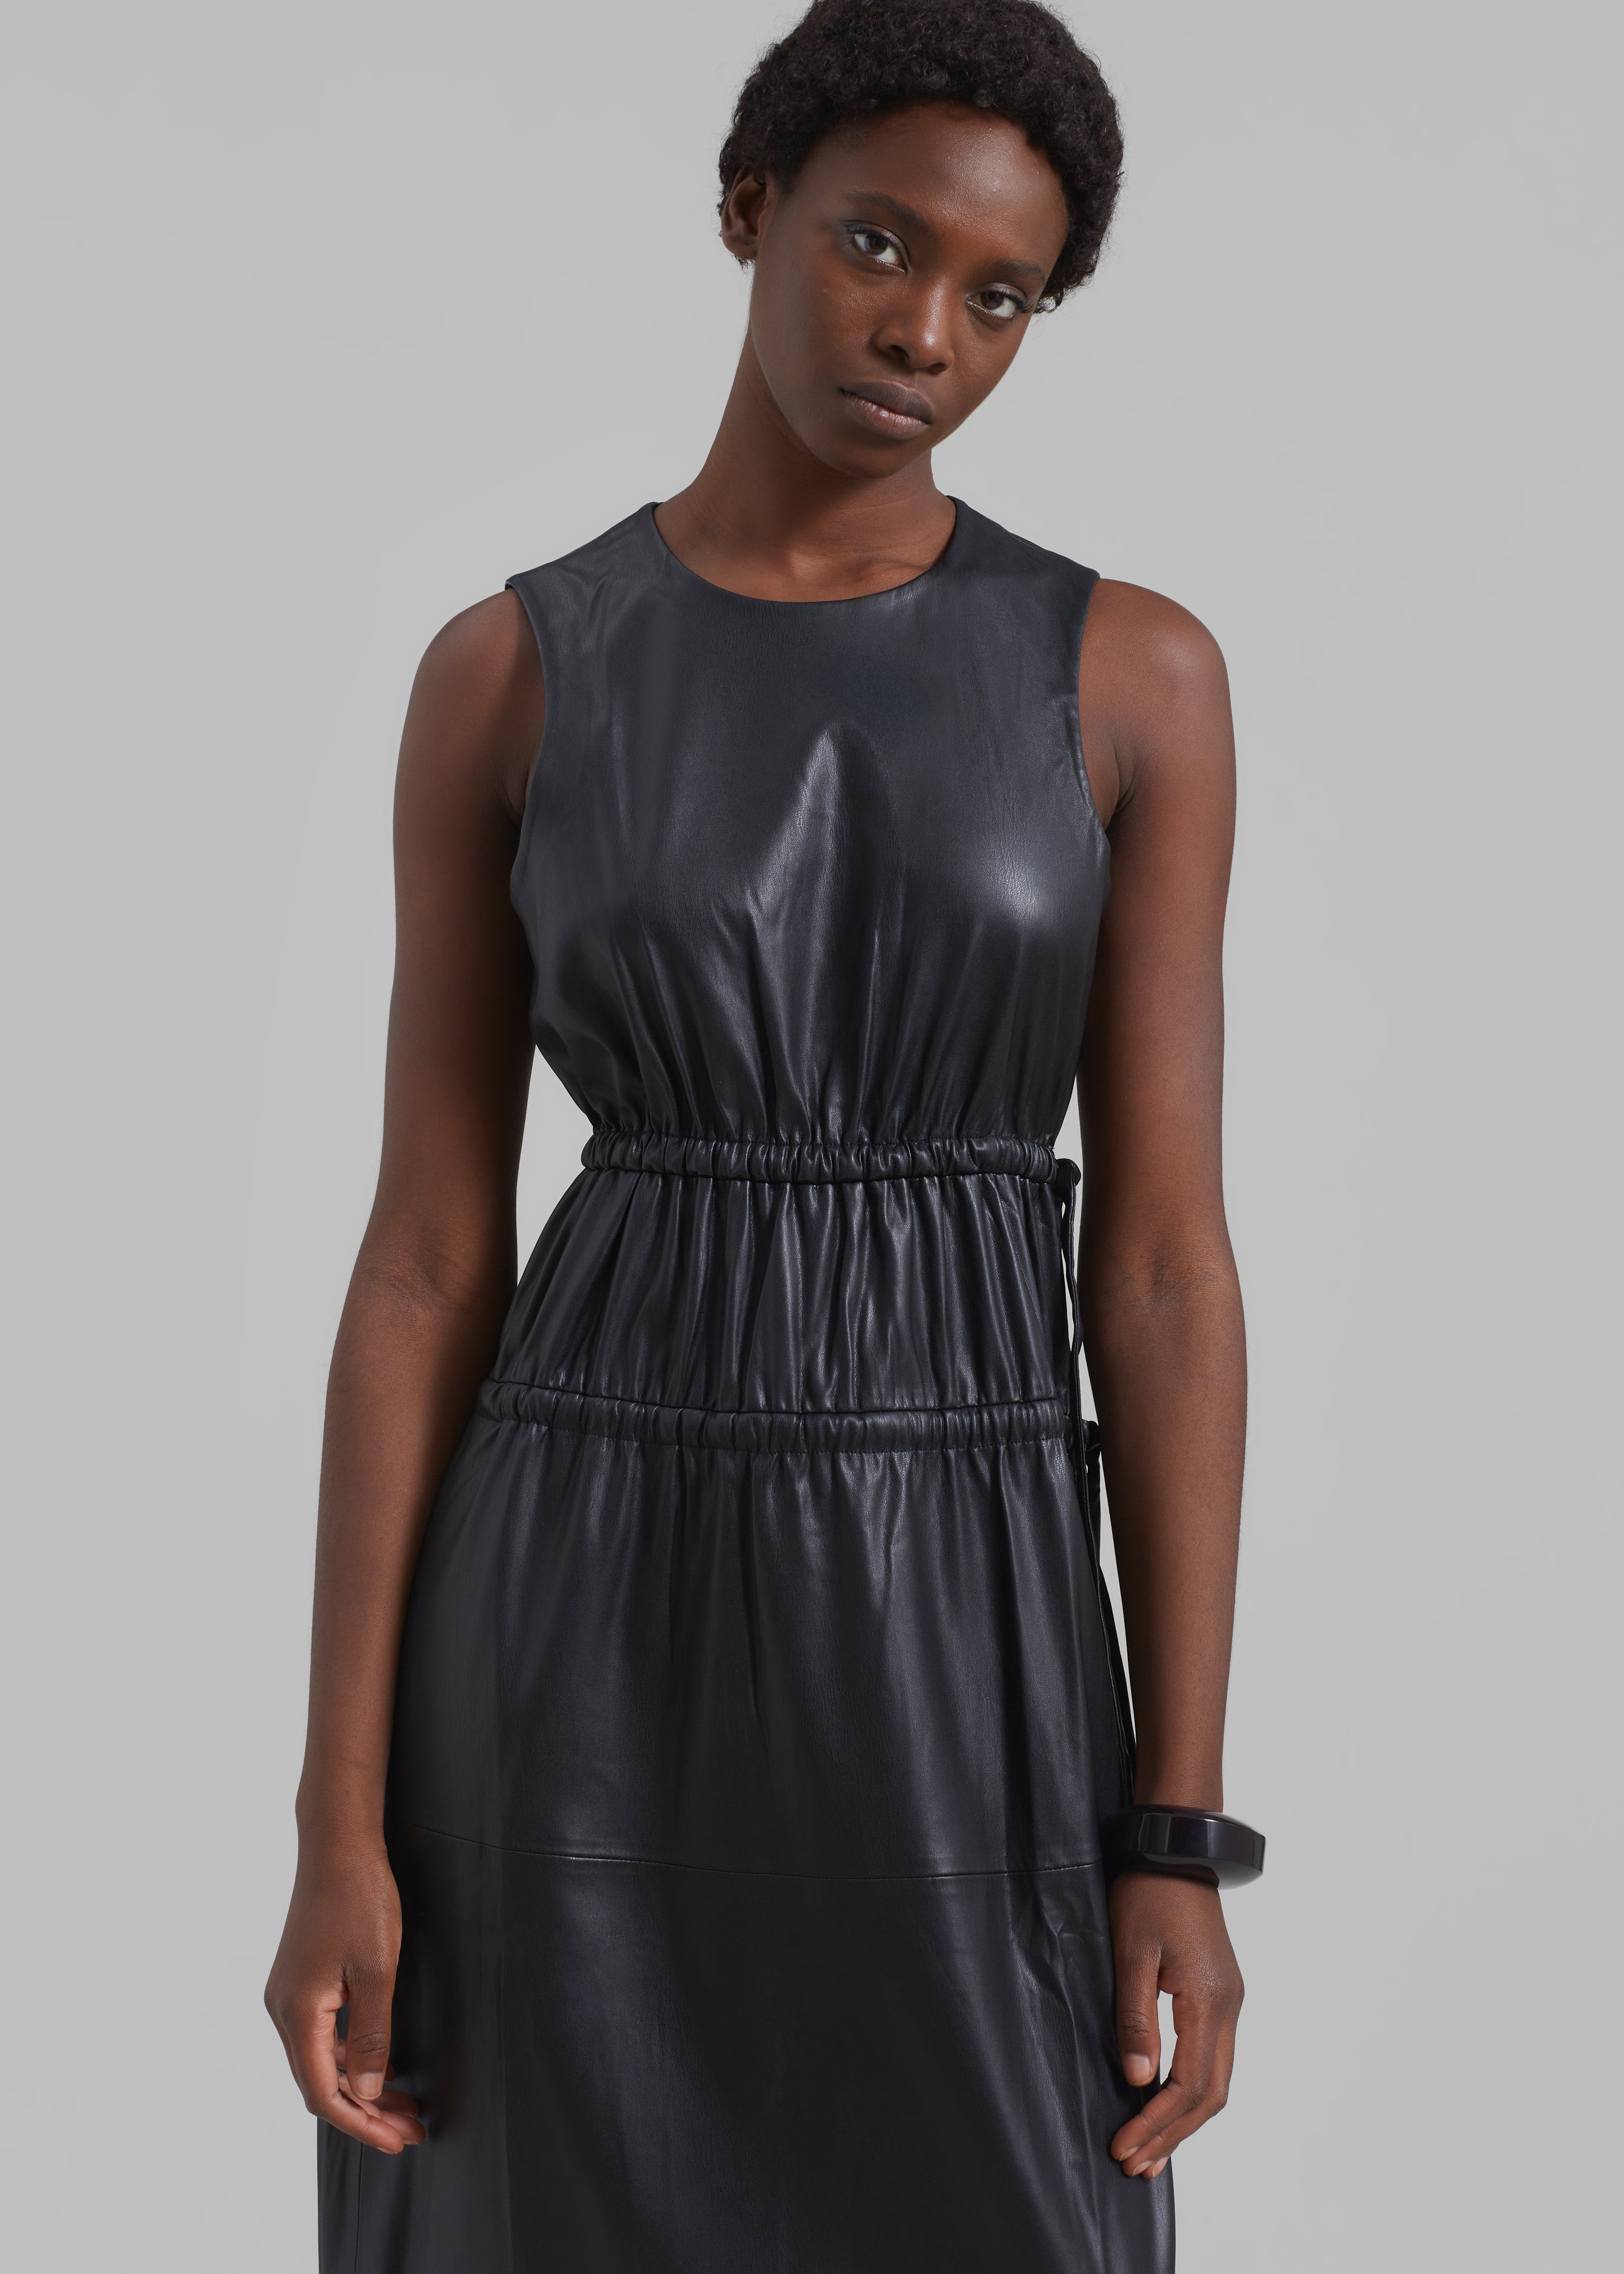 Proenza Schouler White Label Faux Leather Drawstring Dress - Black - 5